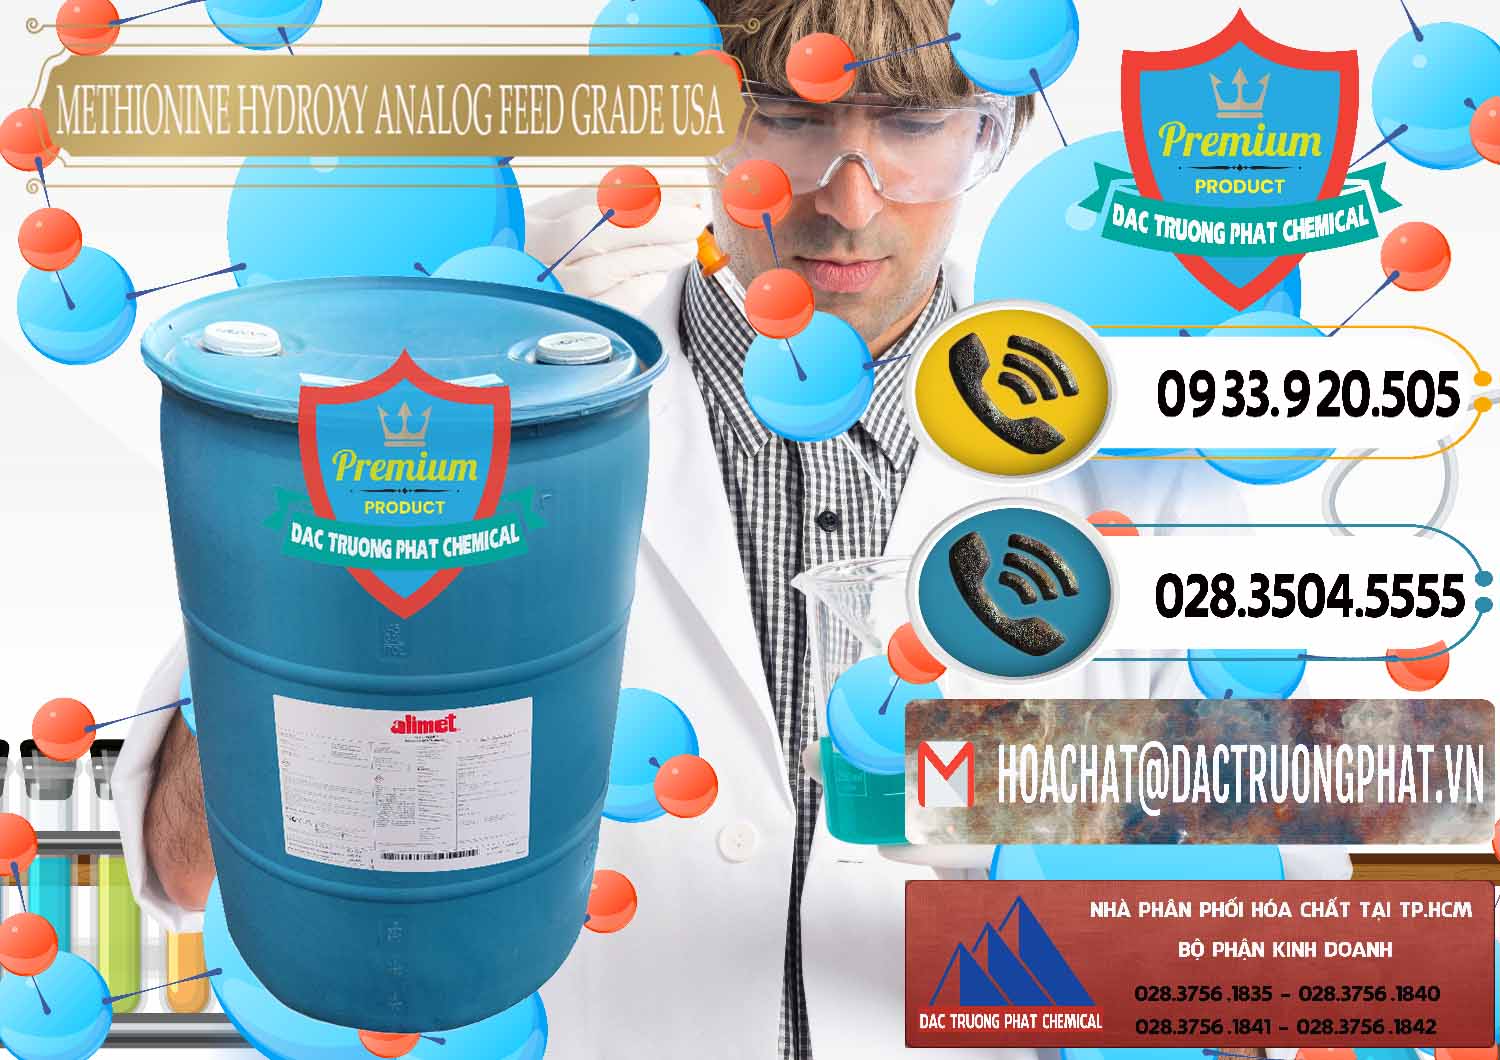 Đơn vị bán ( phân phối ) Methionine Nước - Dạng Lỏng Novus Alimet Mỹ USA - 0316 - Nhà cung cấp - kinh doanh hóa chất tại TP.HCM - hoachatdetnhuom.vn